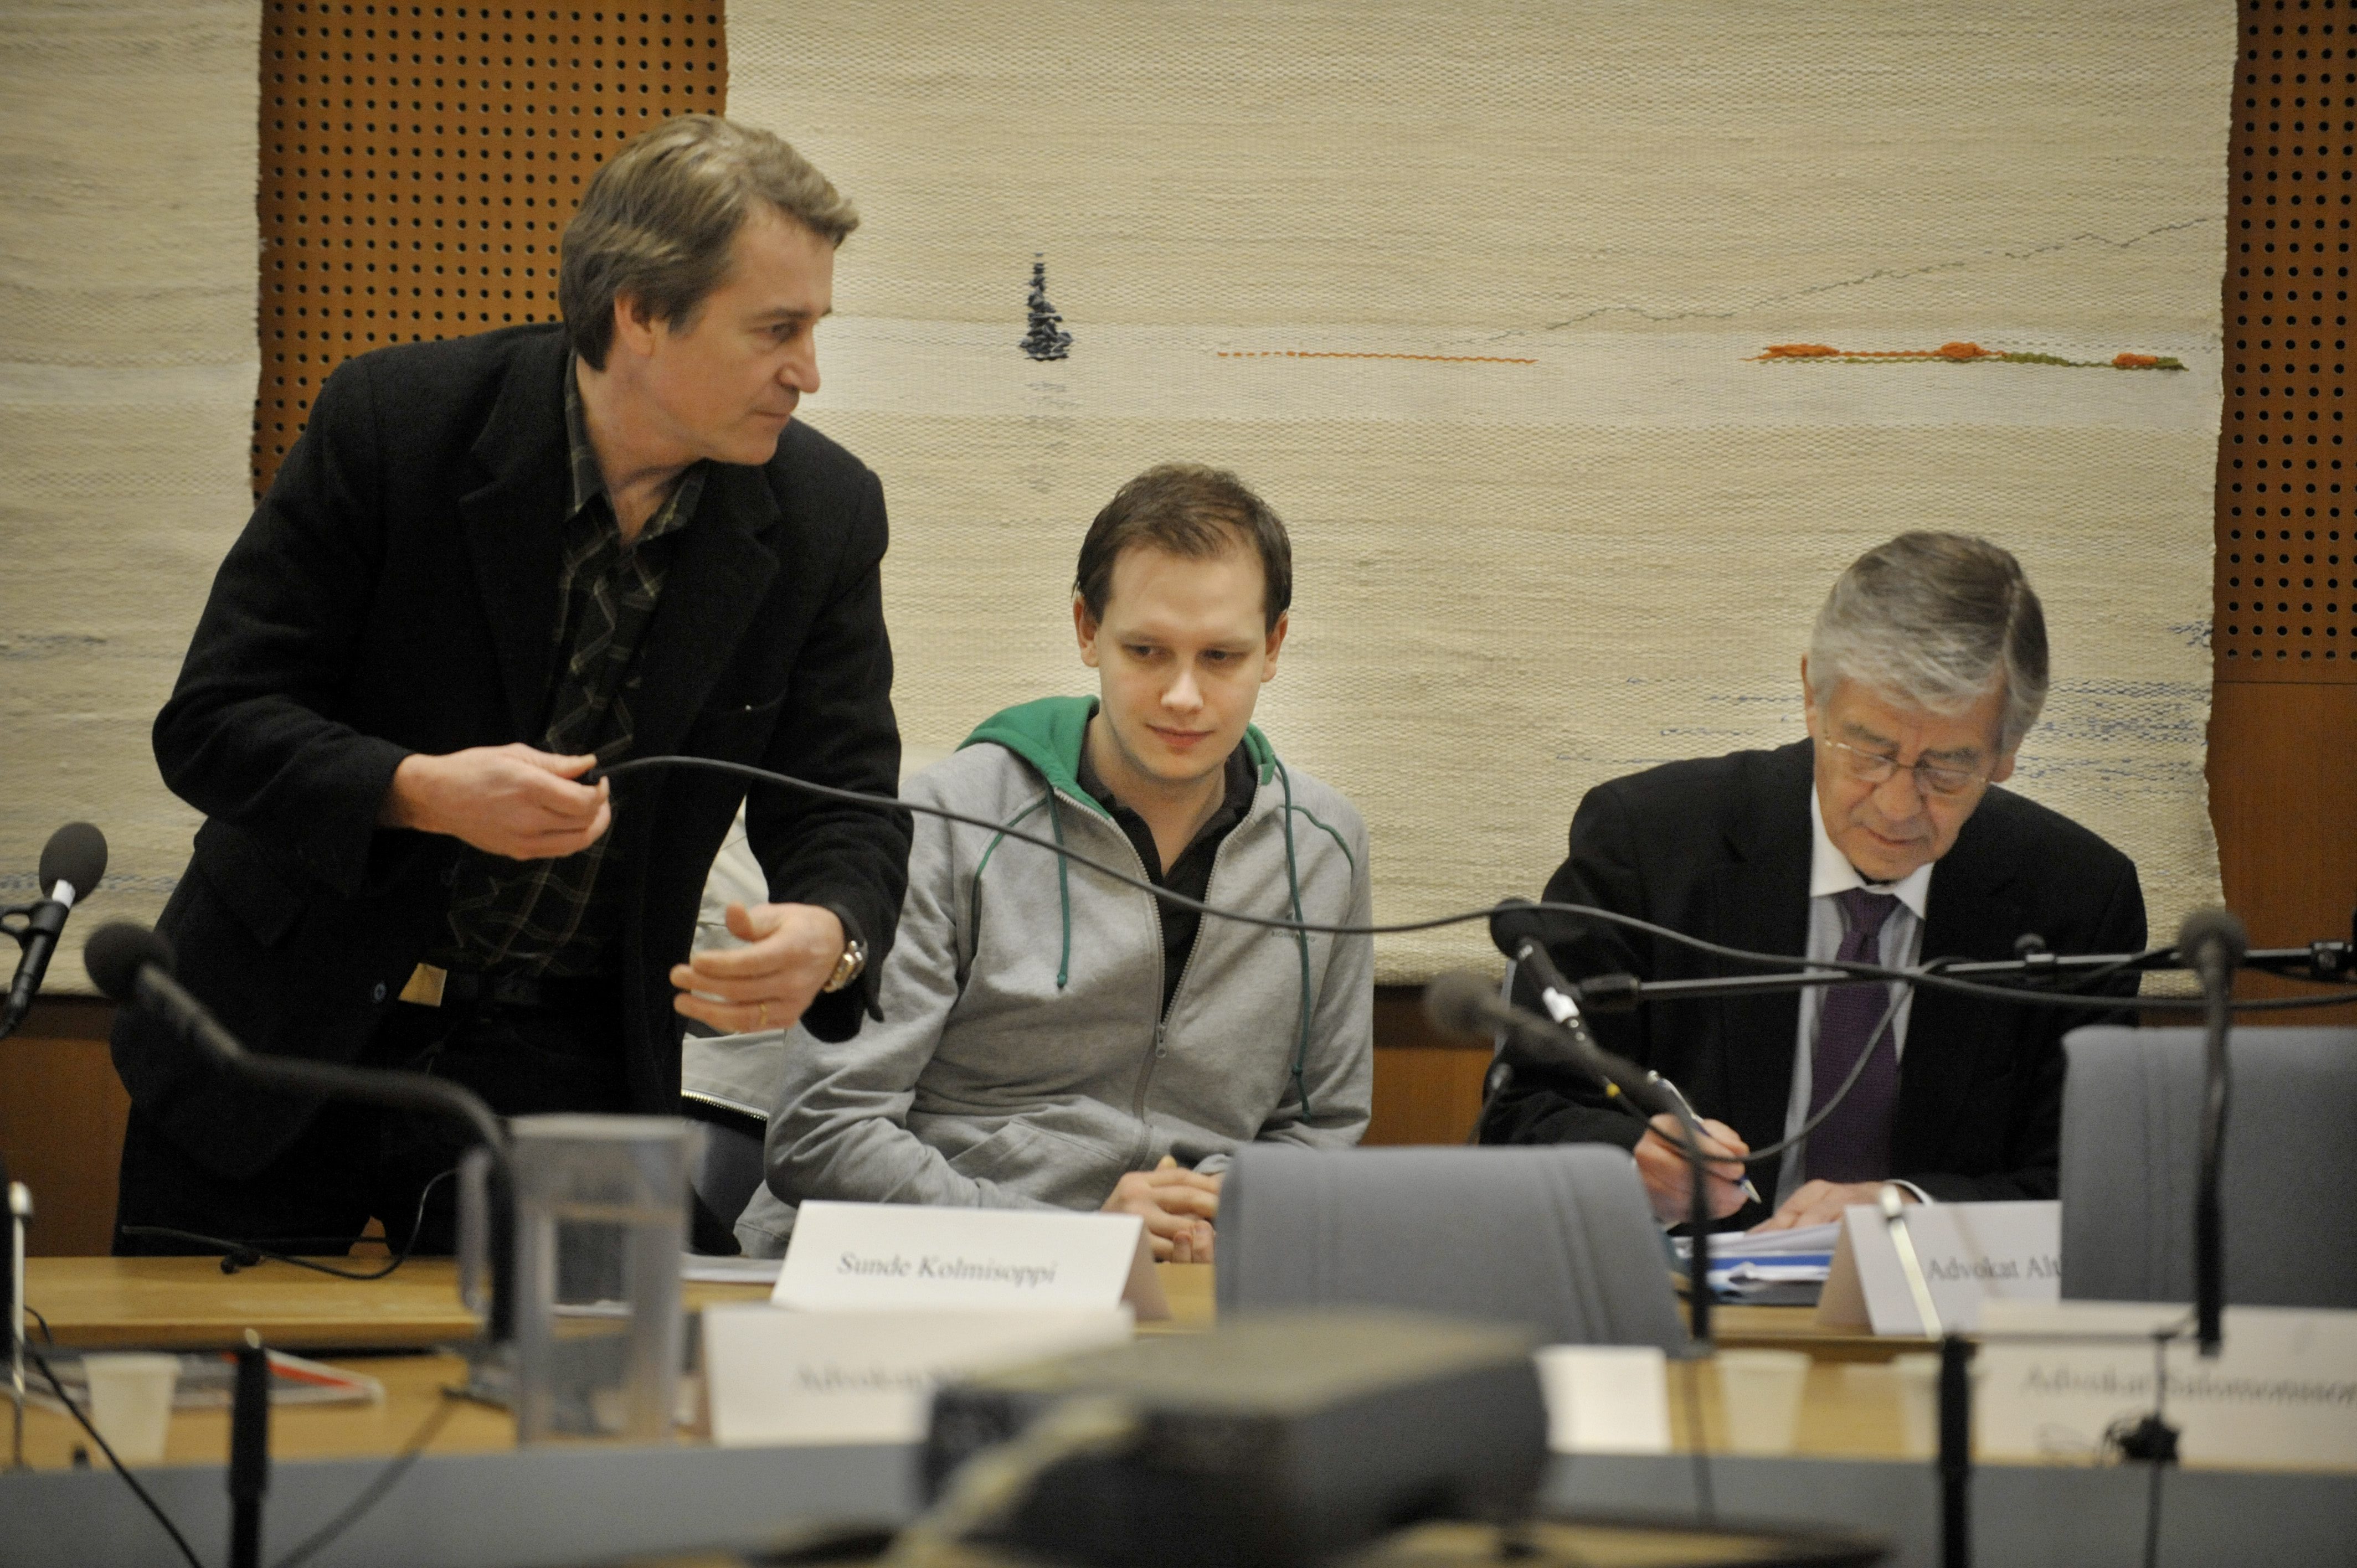 Sunde i rätten 2009 tillsammans med Carl Lundström (som också dömdes) och advokaten Peter Althin.